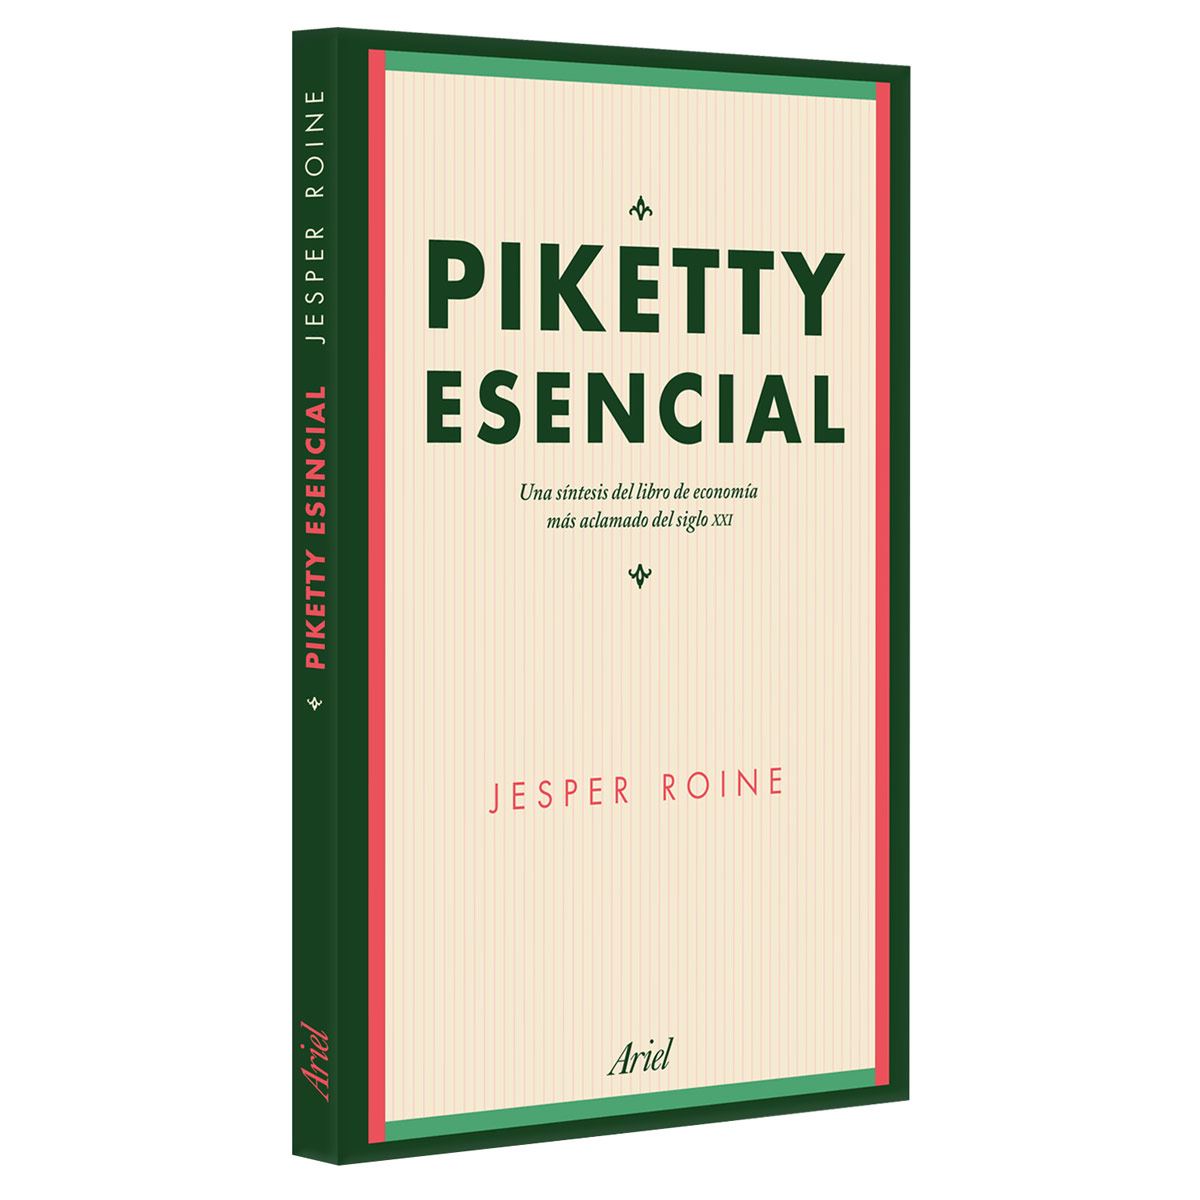 Piketty esencial